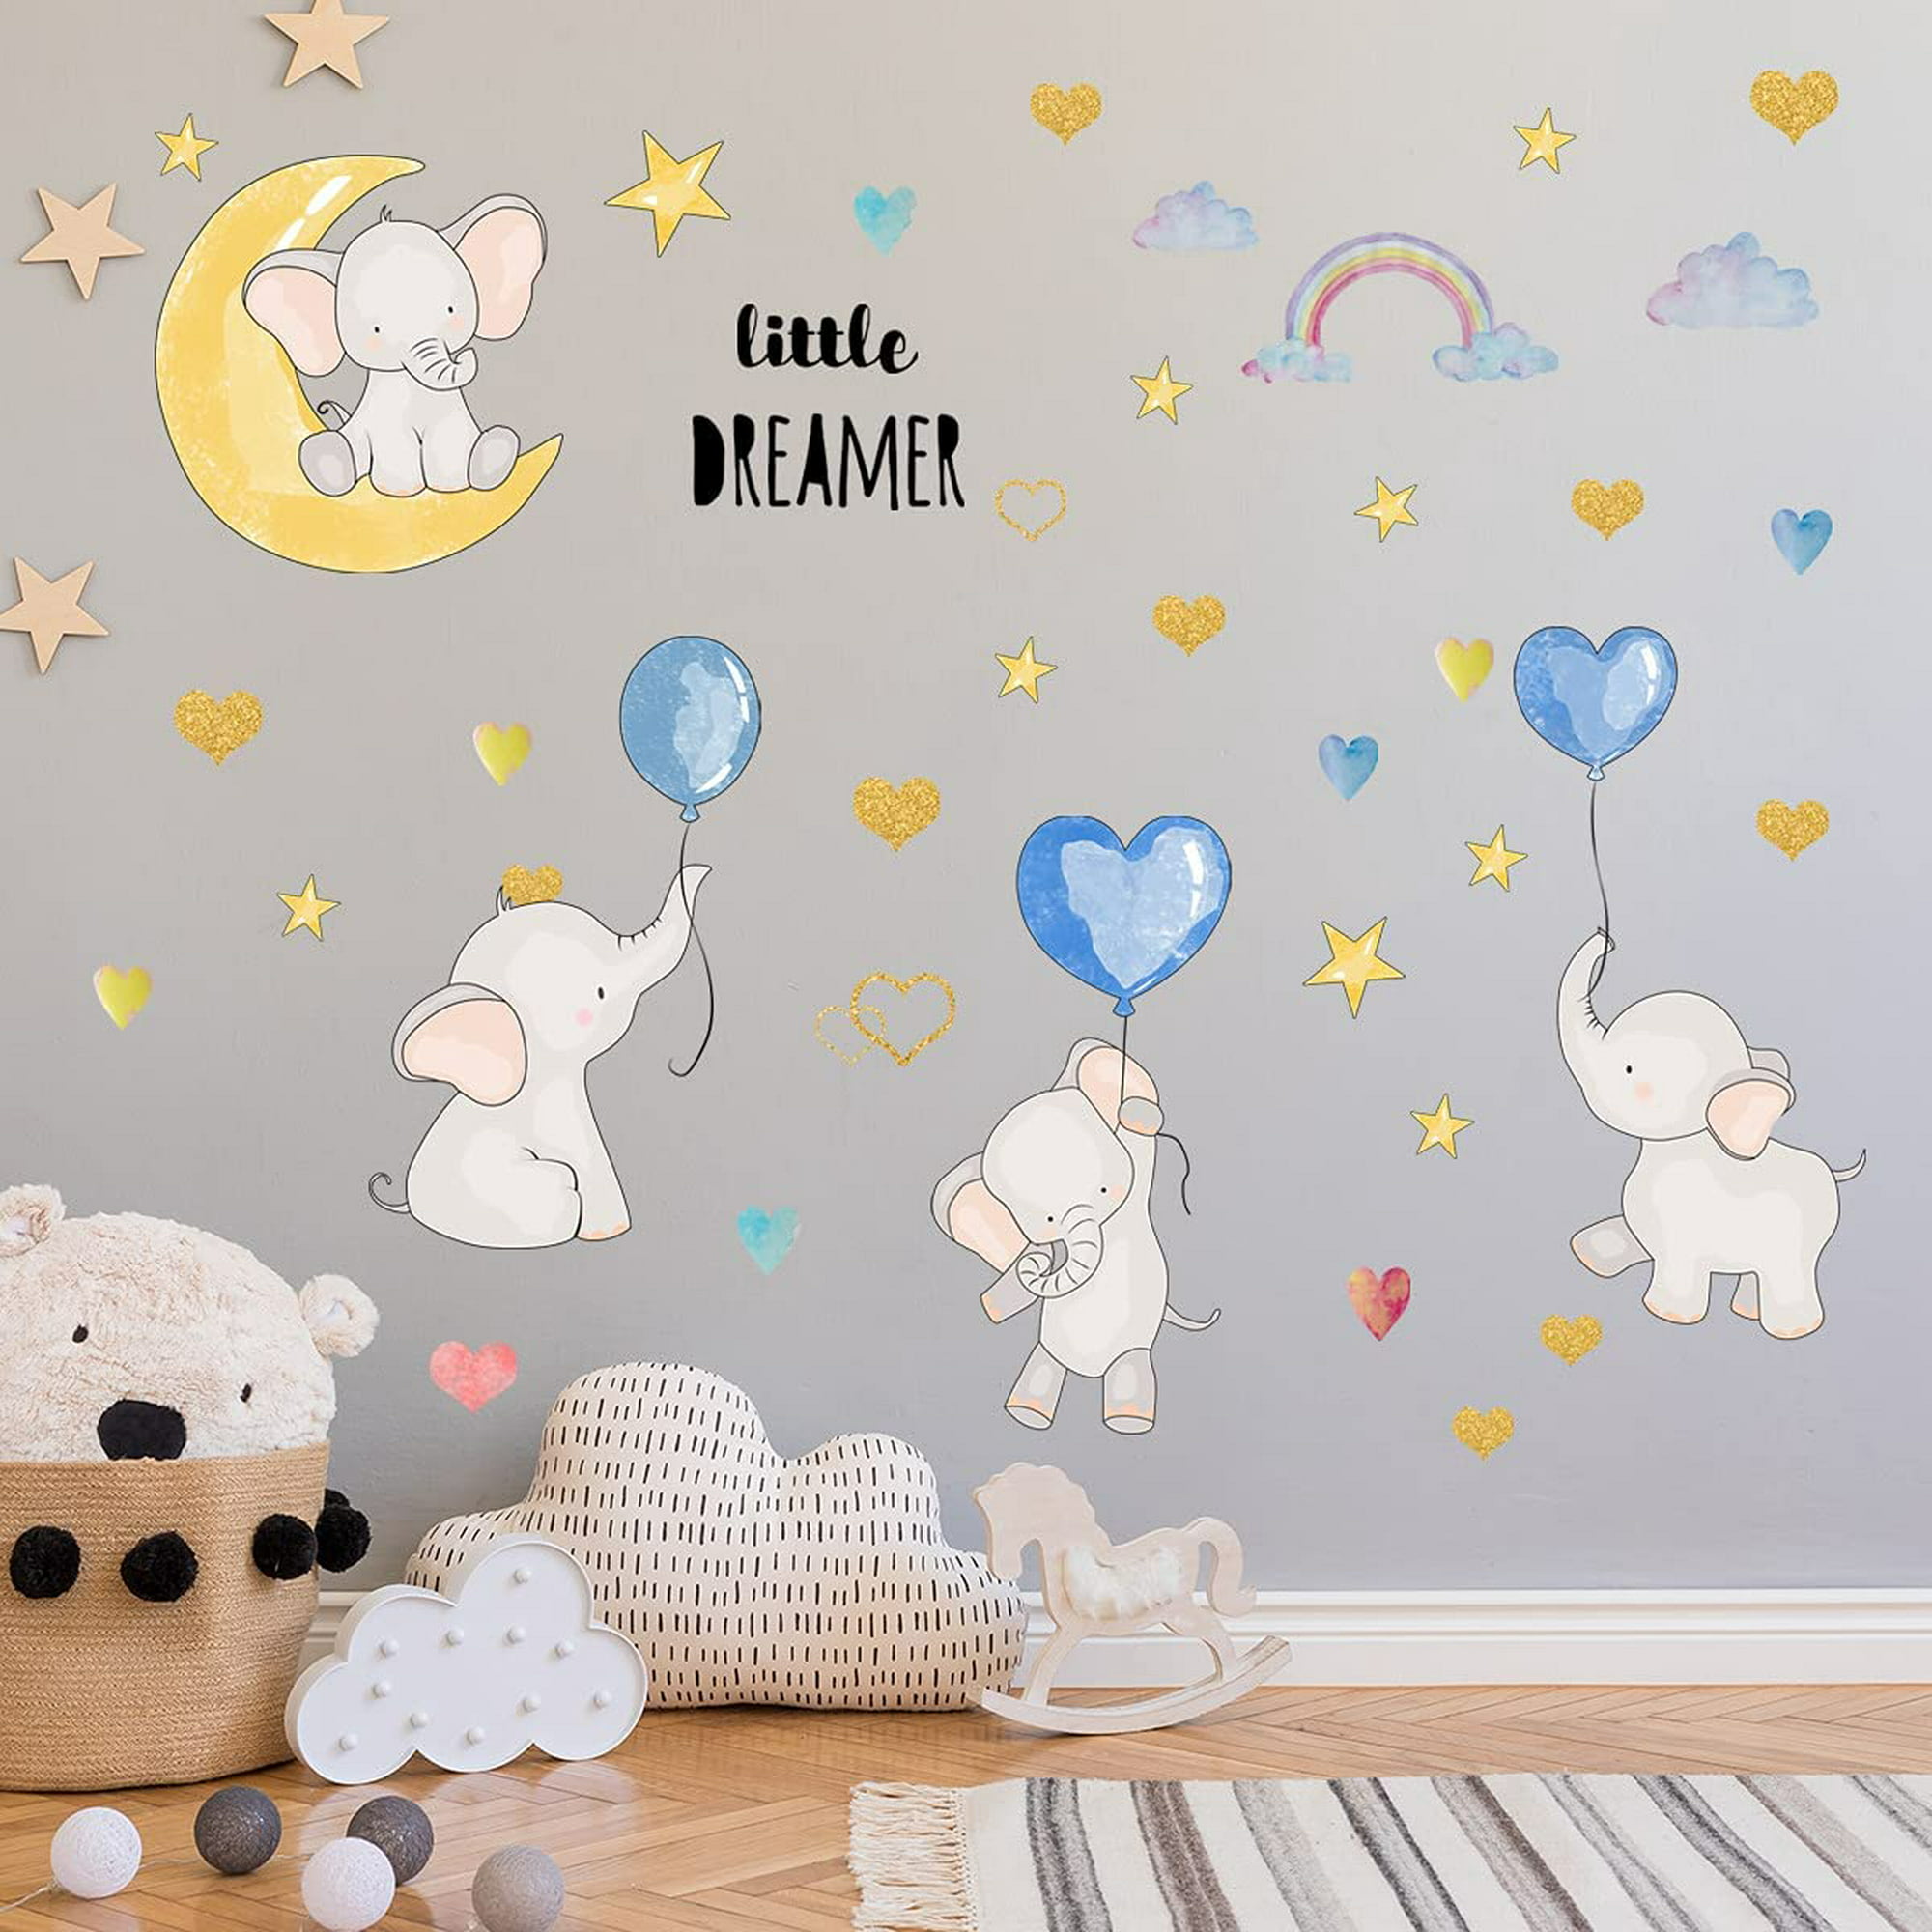  [True Love] Pegatinas de pared decorativas para decorar la pared  : Bebés